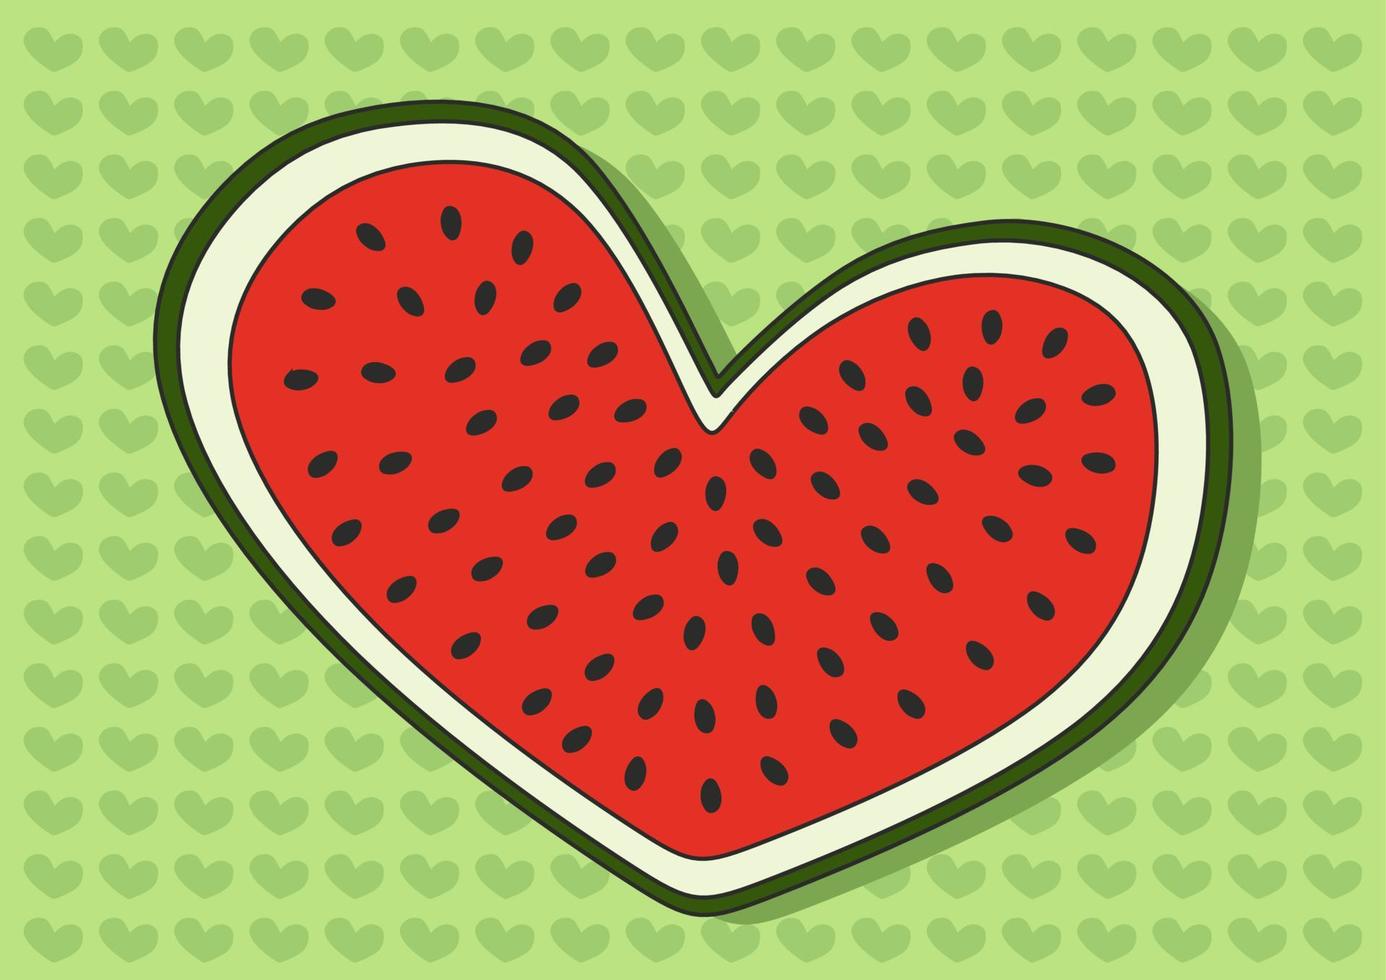 mooi hoor watermeloen achtergrond met hart vorm geven aan. vector